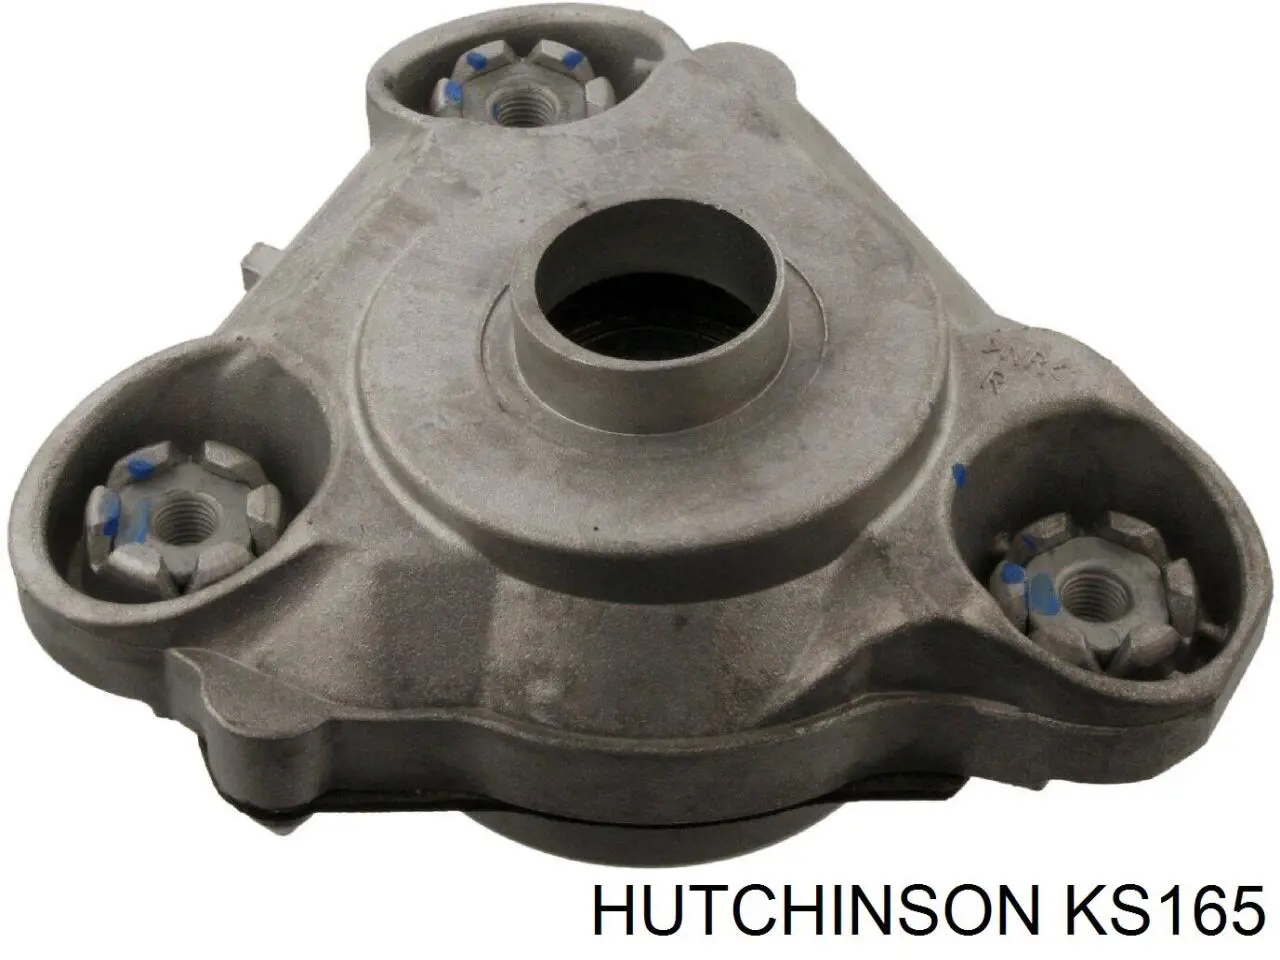 KS165 Hutchinson soporte amortiguador delantero derecho